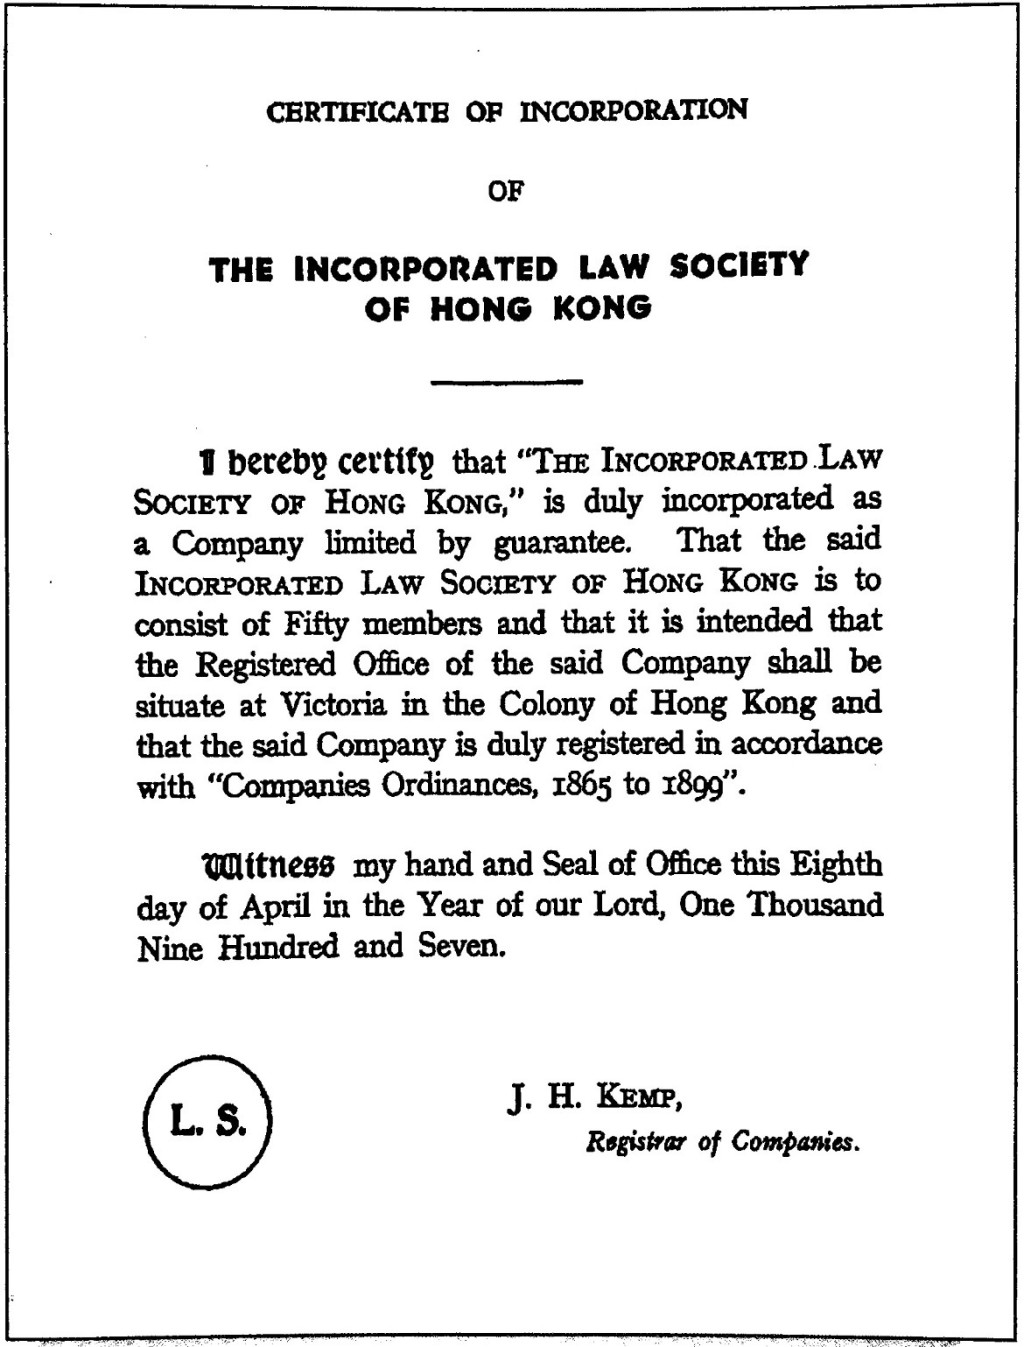 公司註冊處處長於1907年4月8日根據《公司條例》簽發予律師會的「公司註冊證明書」。